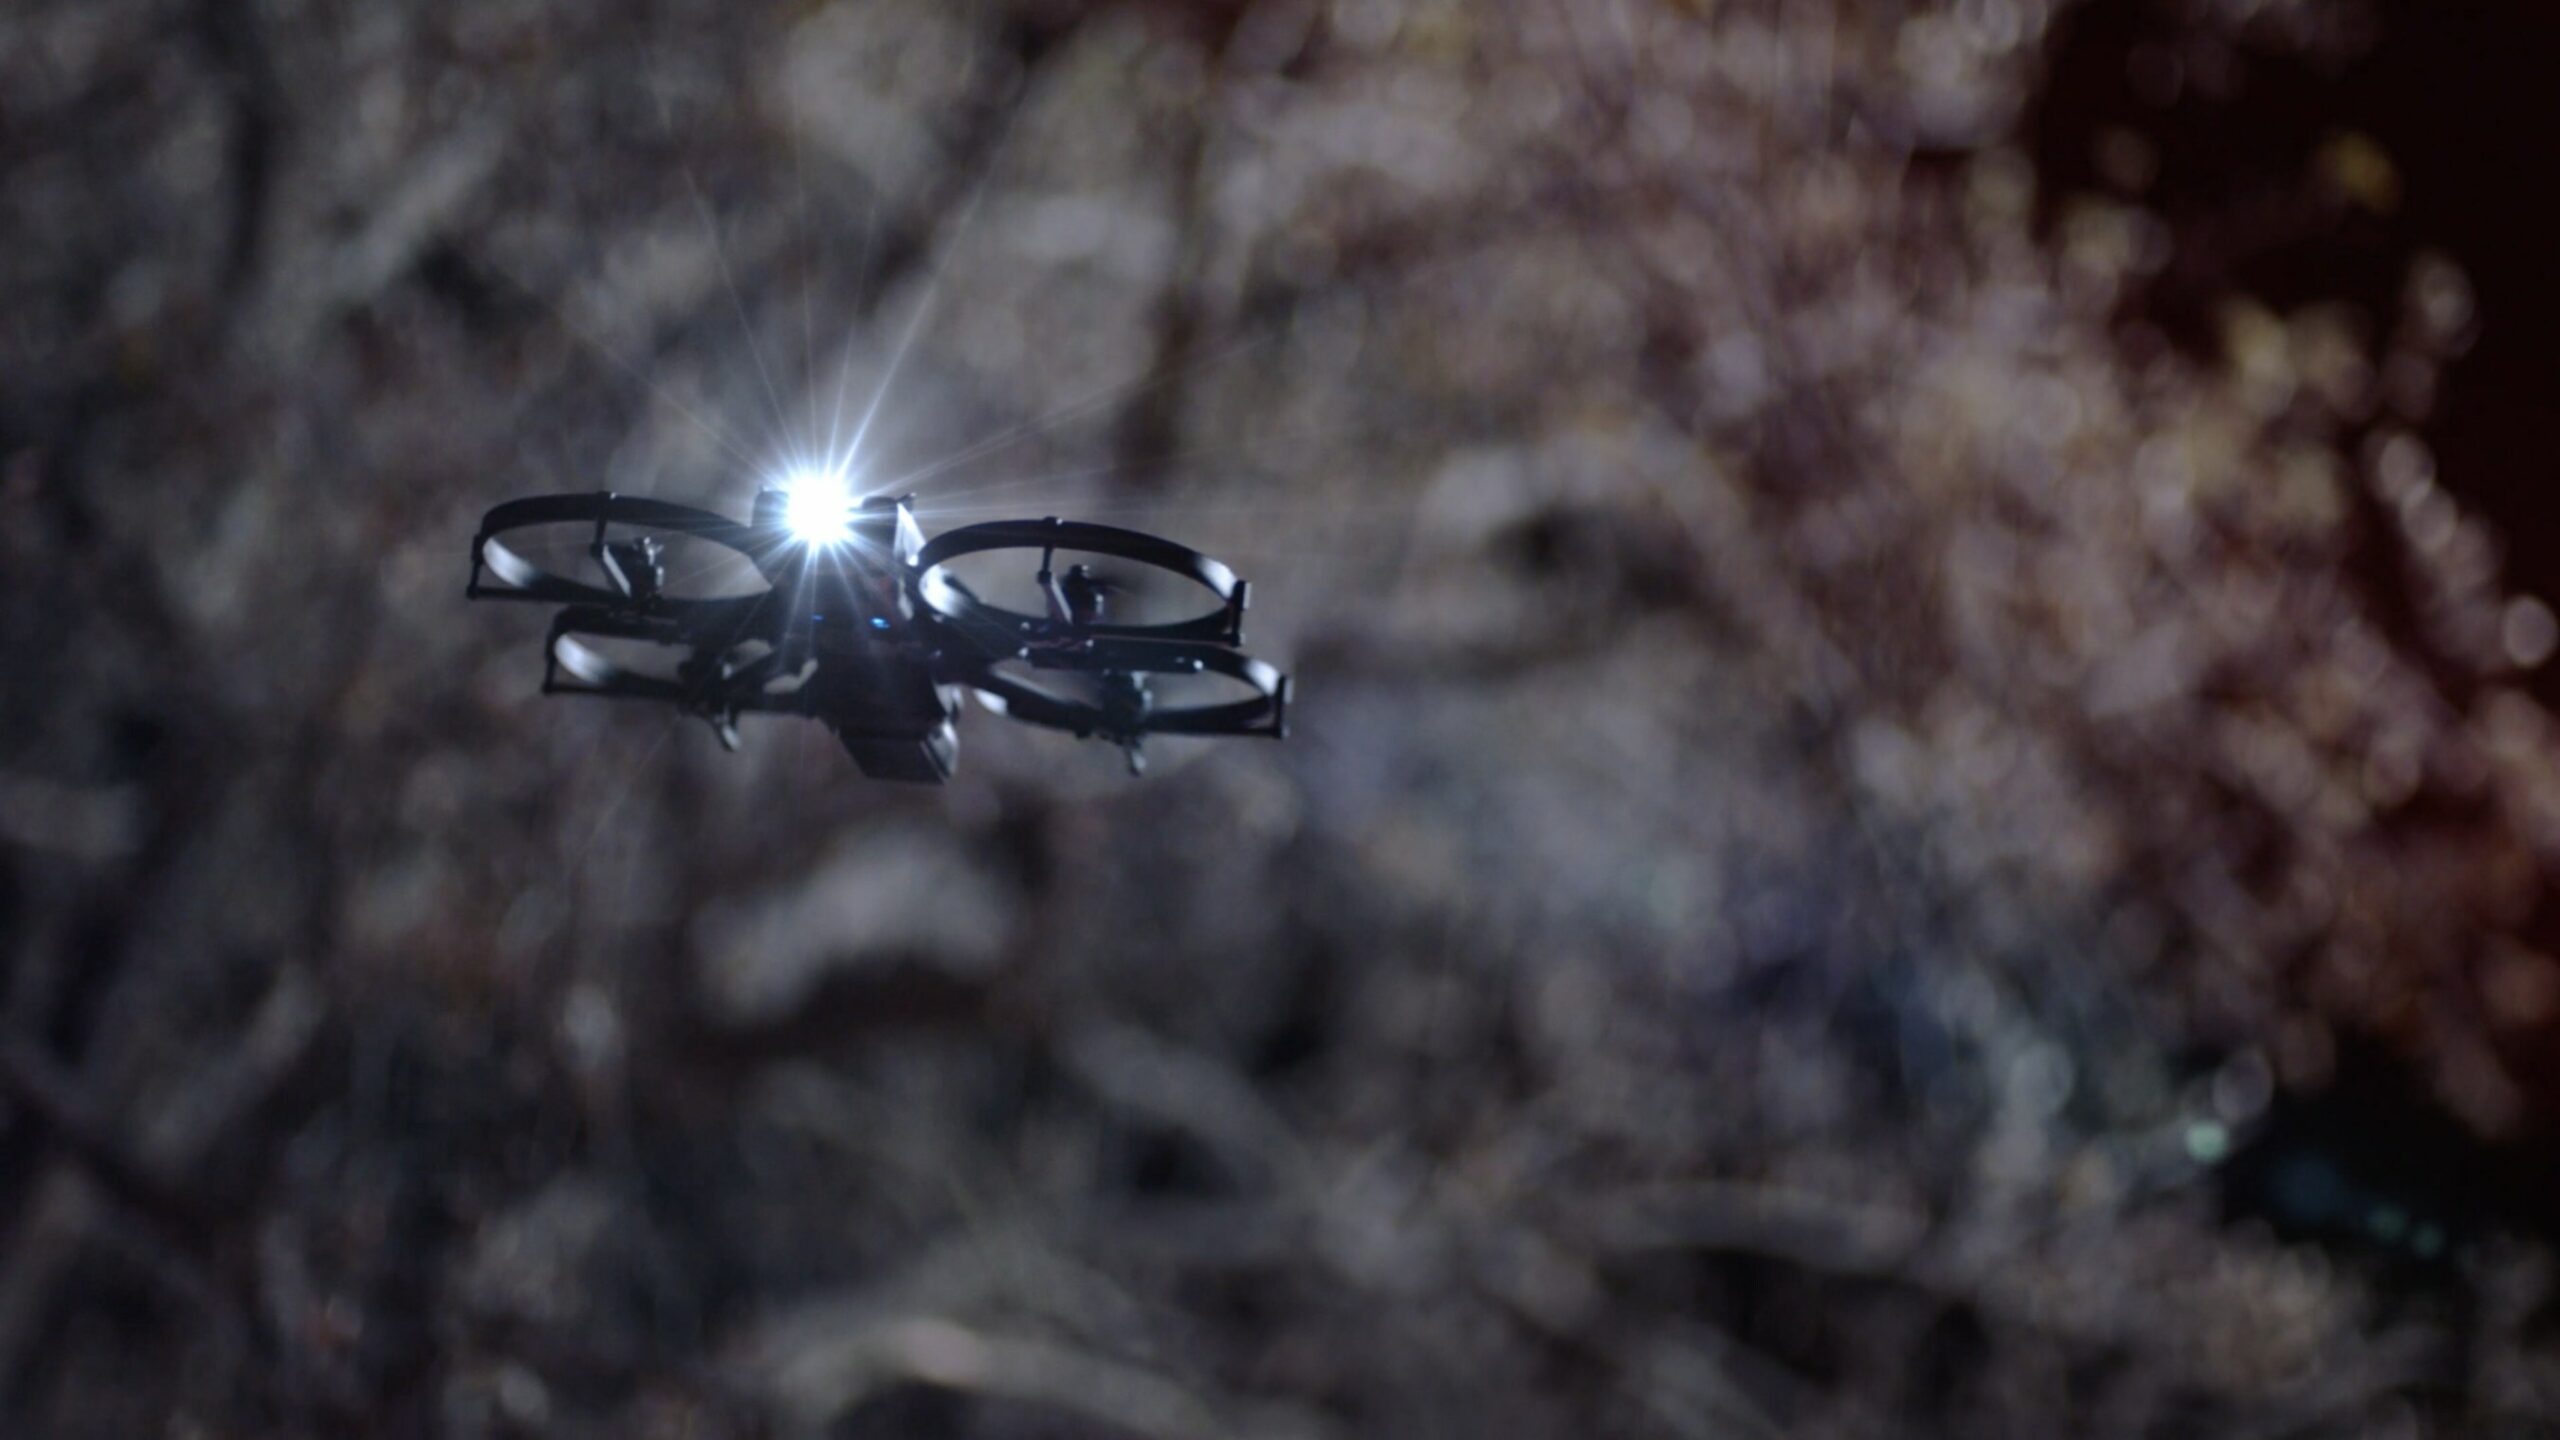 BRINC Announces Release of Next-Generation LEMUR 2 Drone